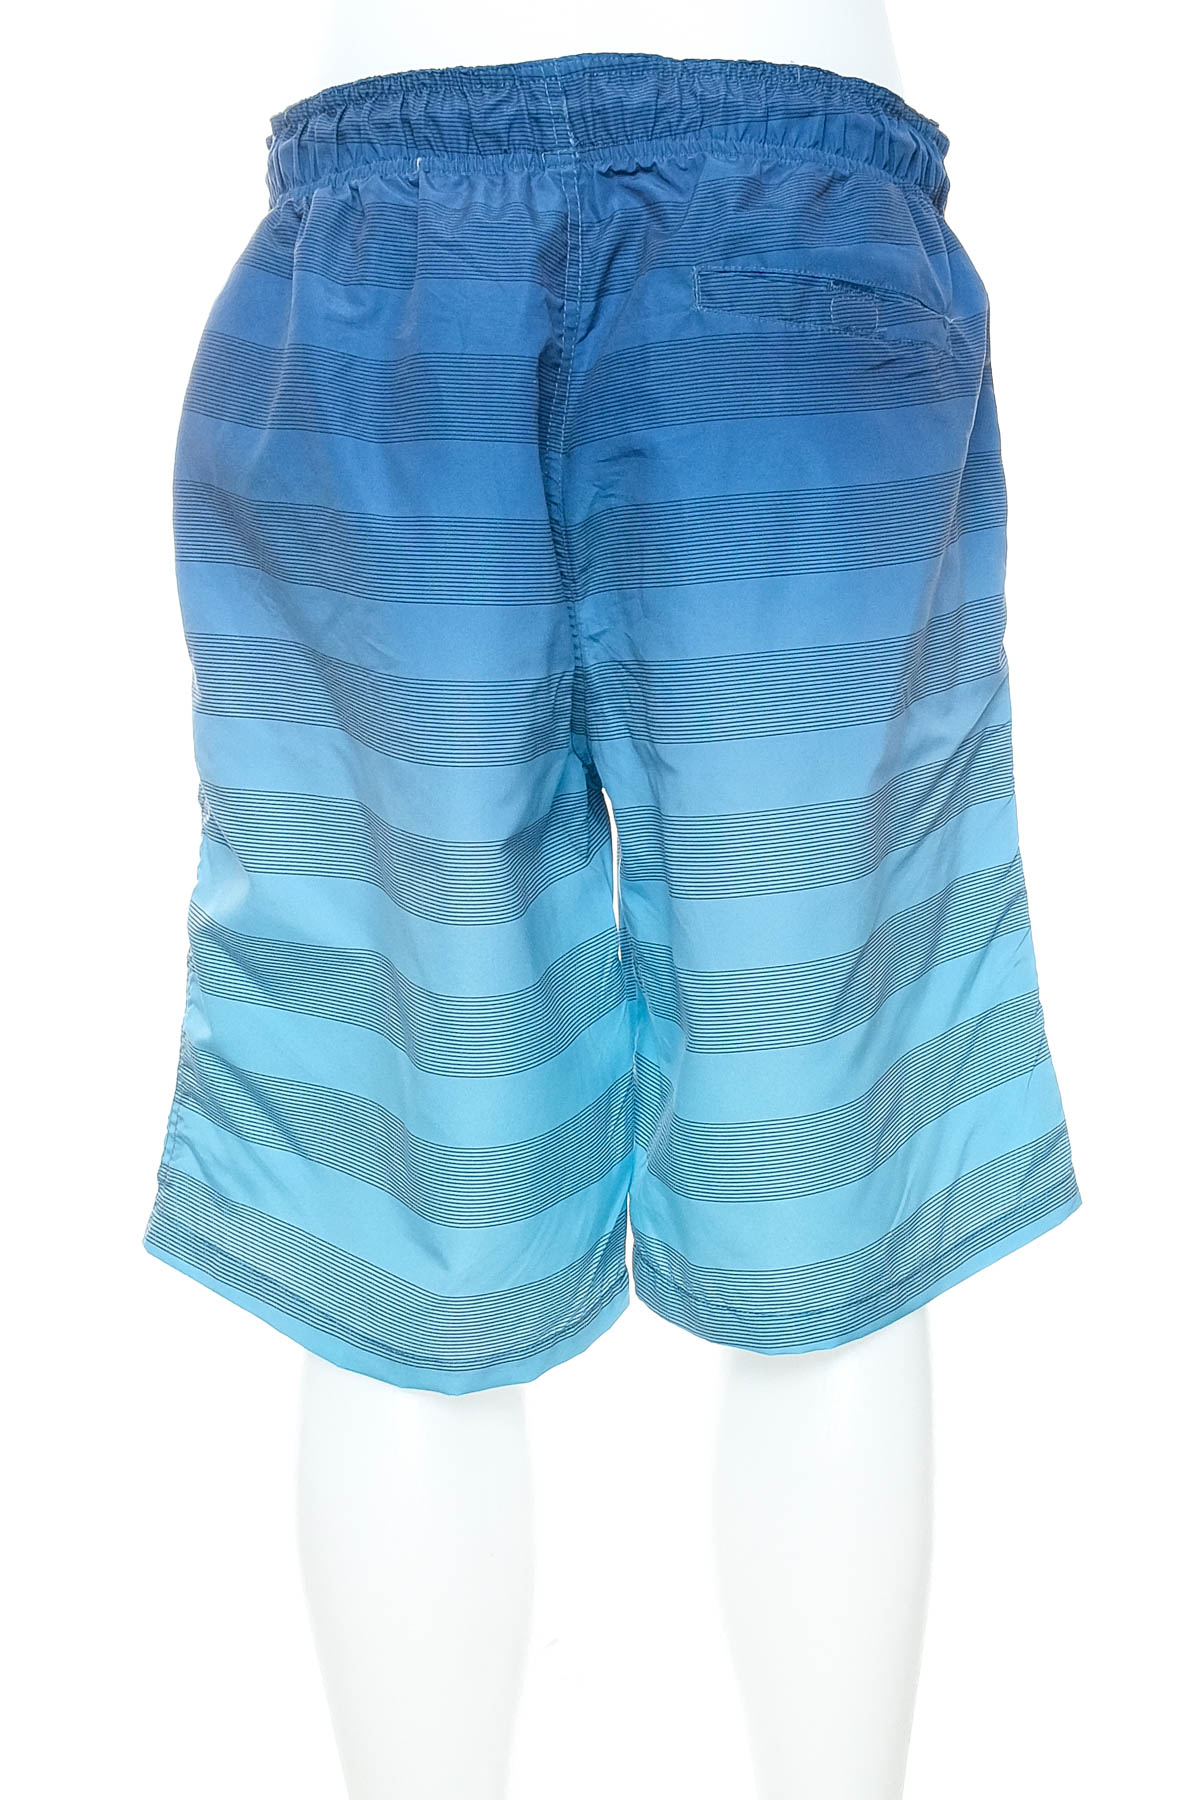 Men's shorts - Colourful Beach - 1